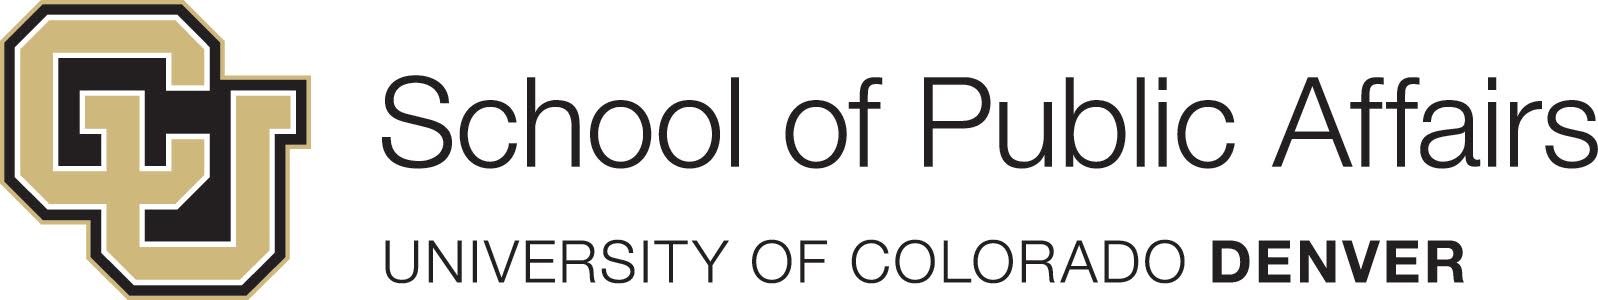 UCD school of public affairs logo